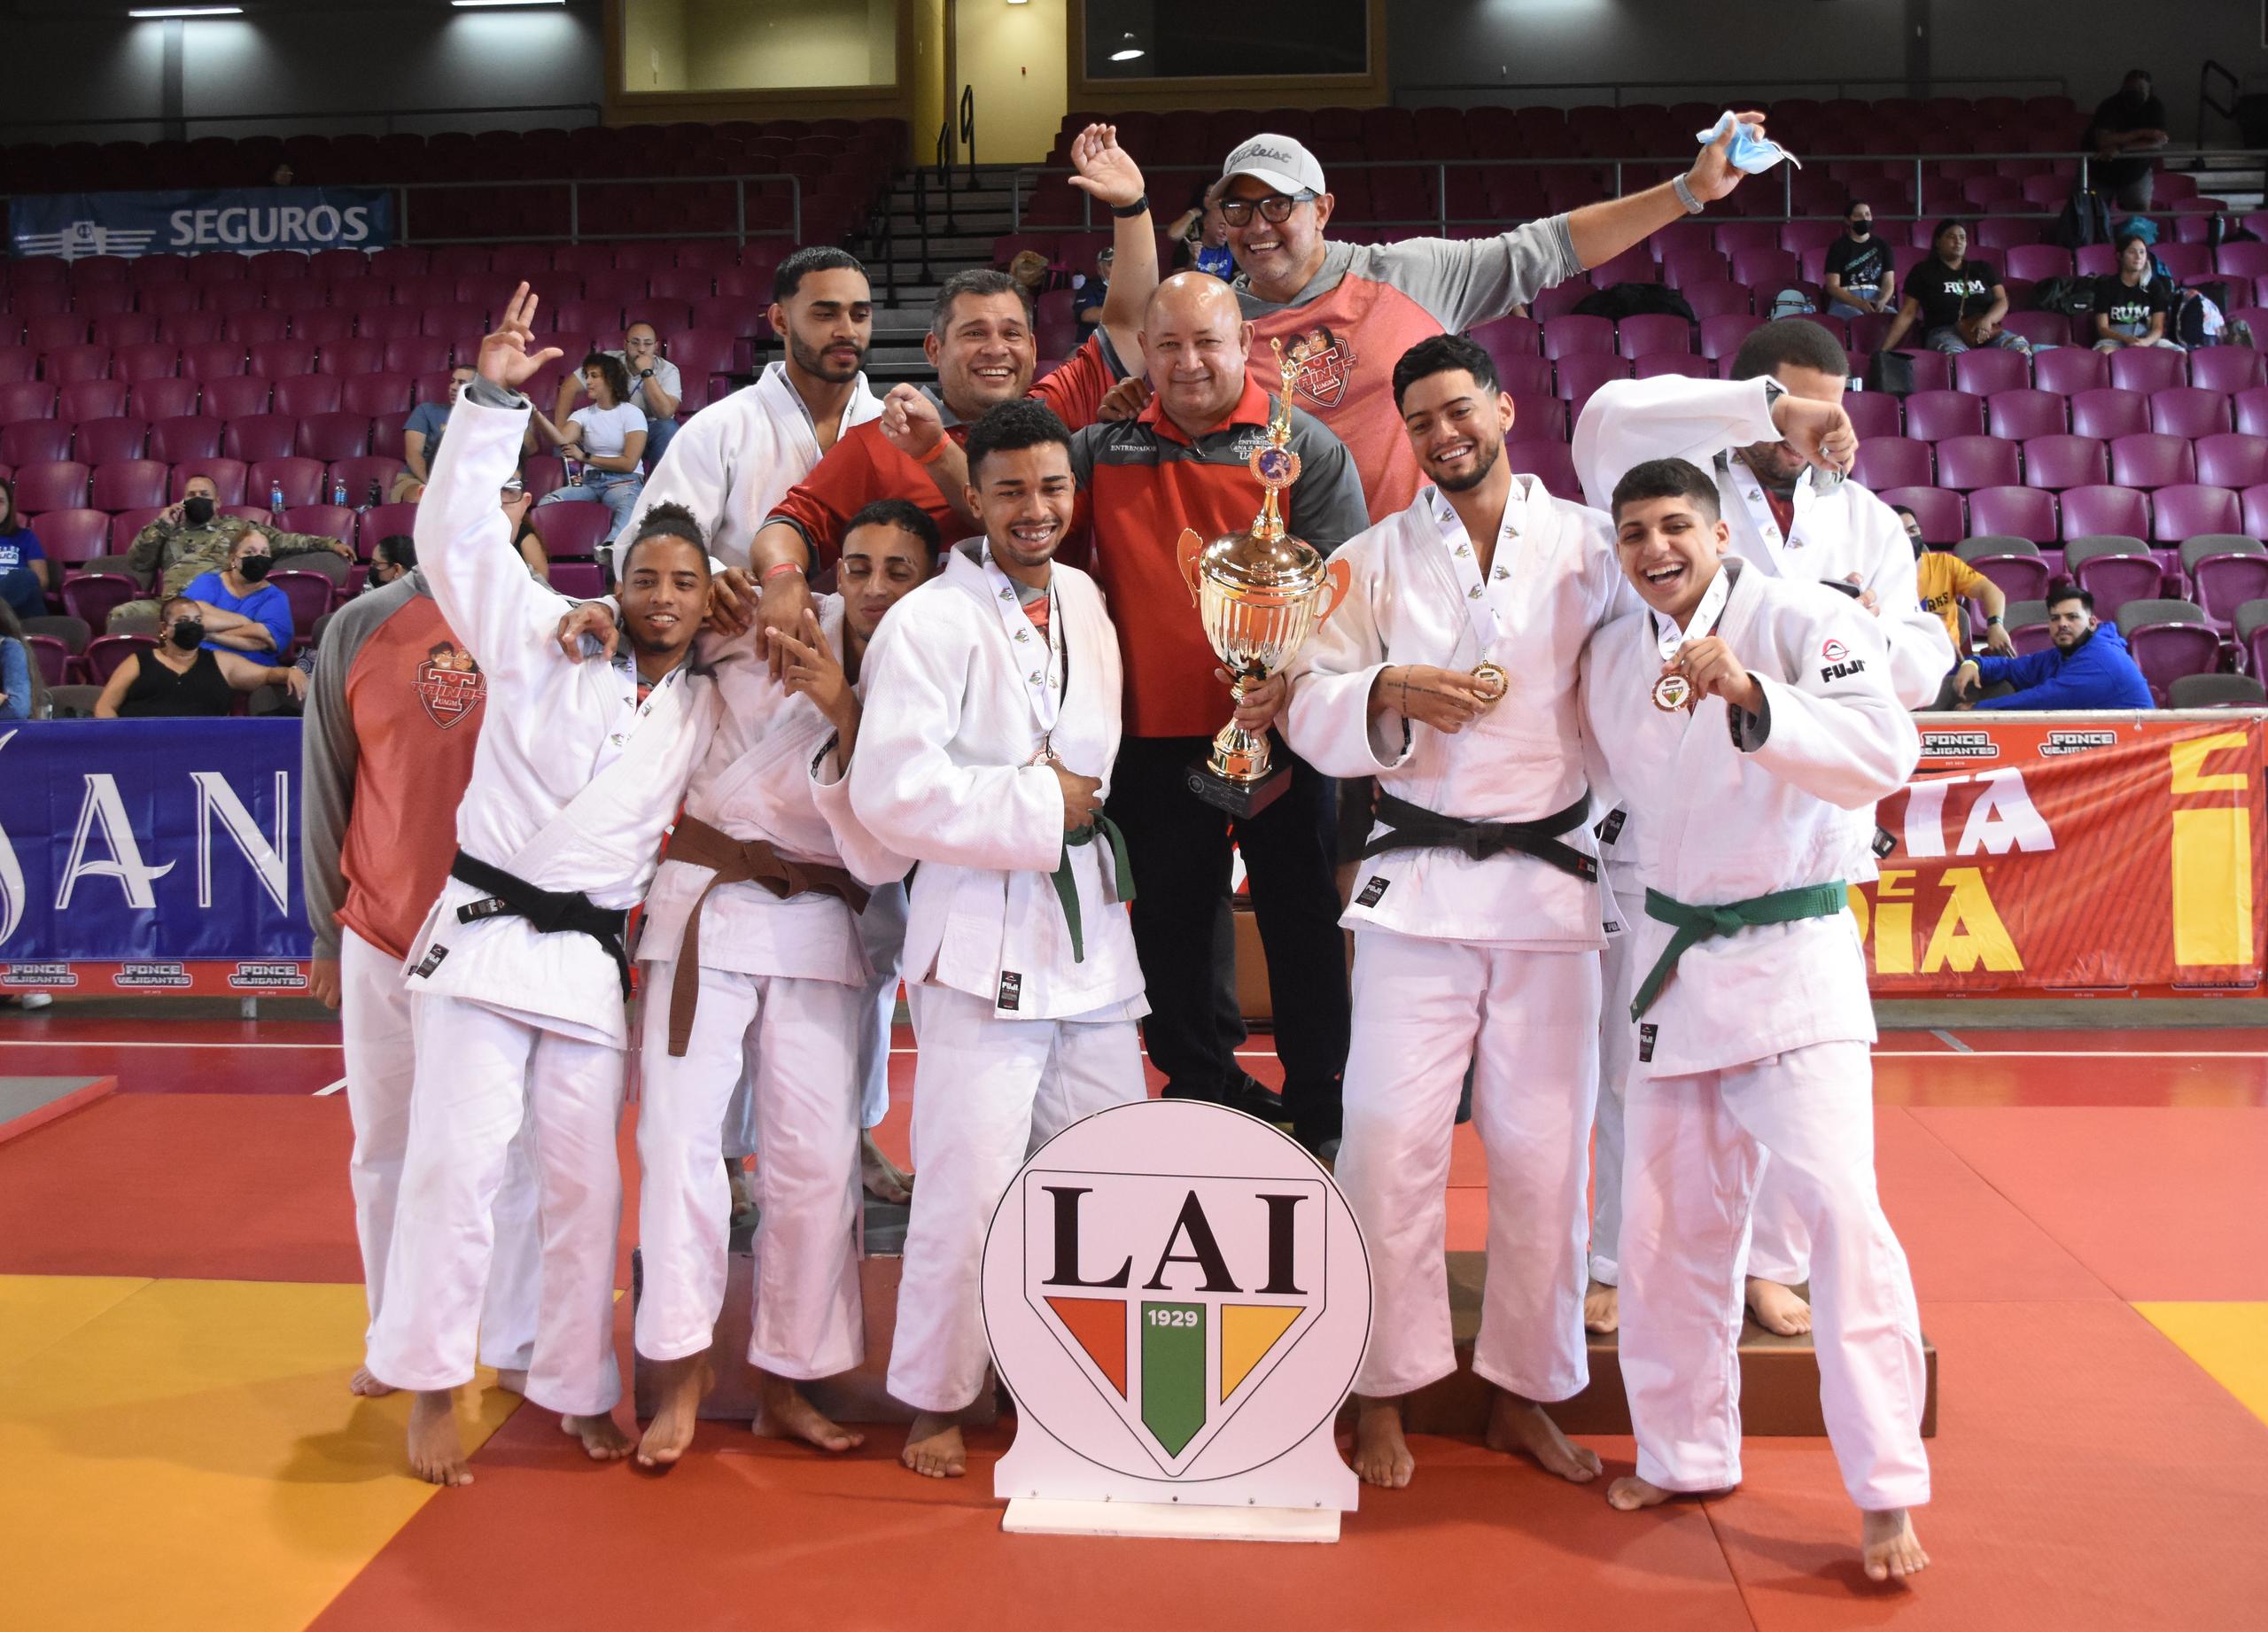 Los campeonas de la UAGM posan tras a conquista del campeonato global.